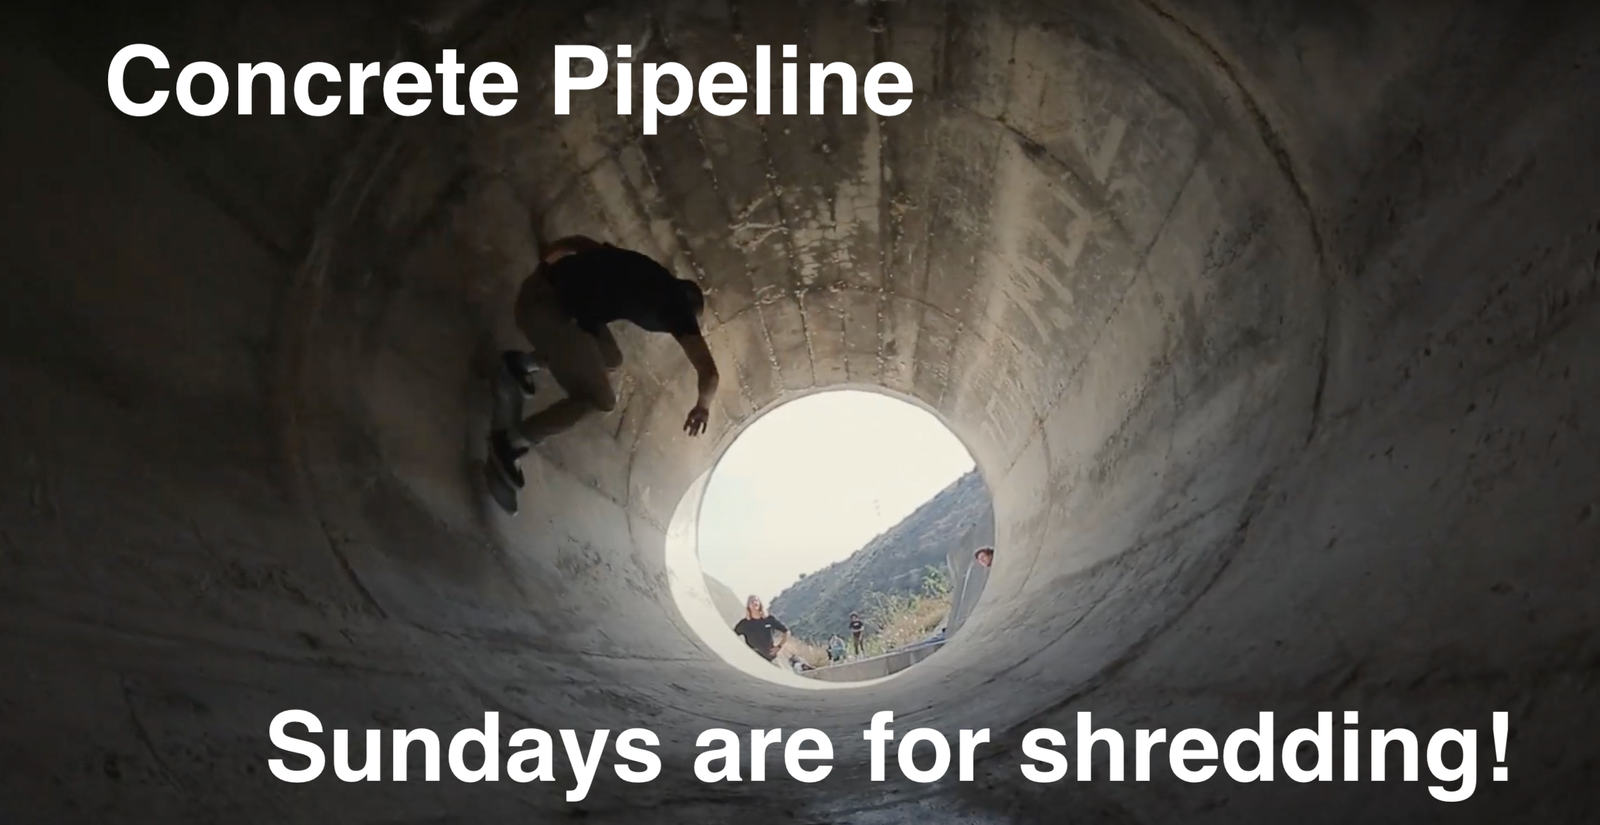 Concrete Pipeline - Sundays are for shredding!